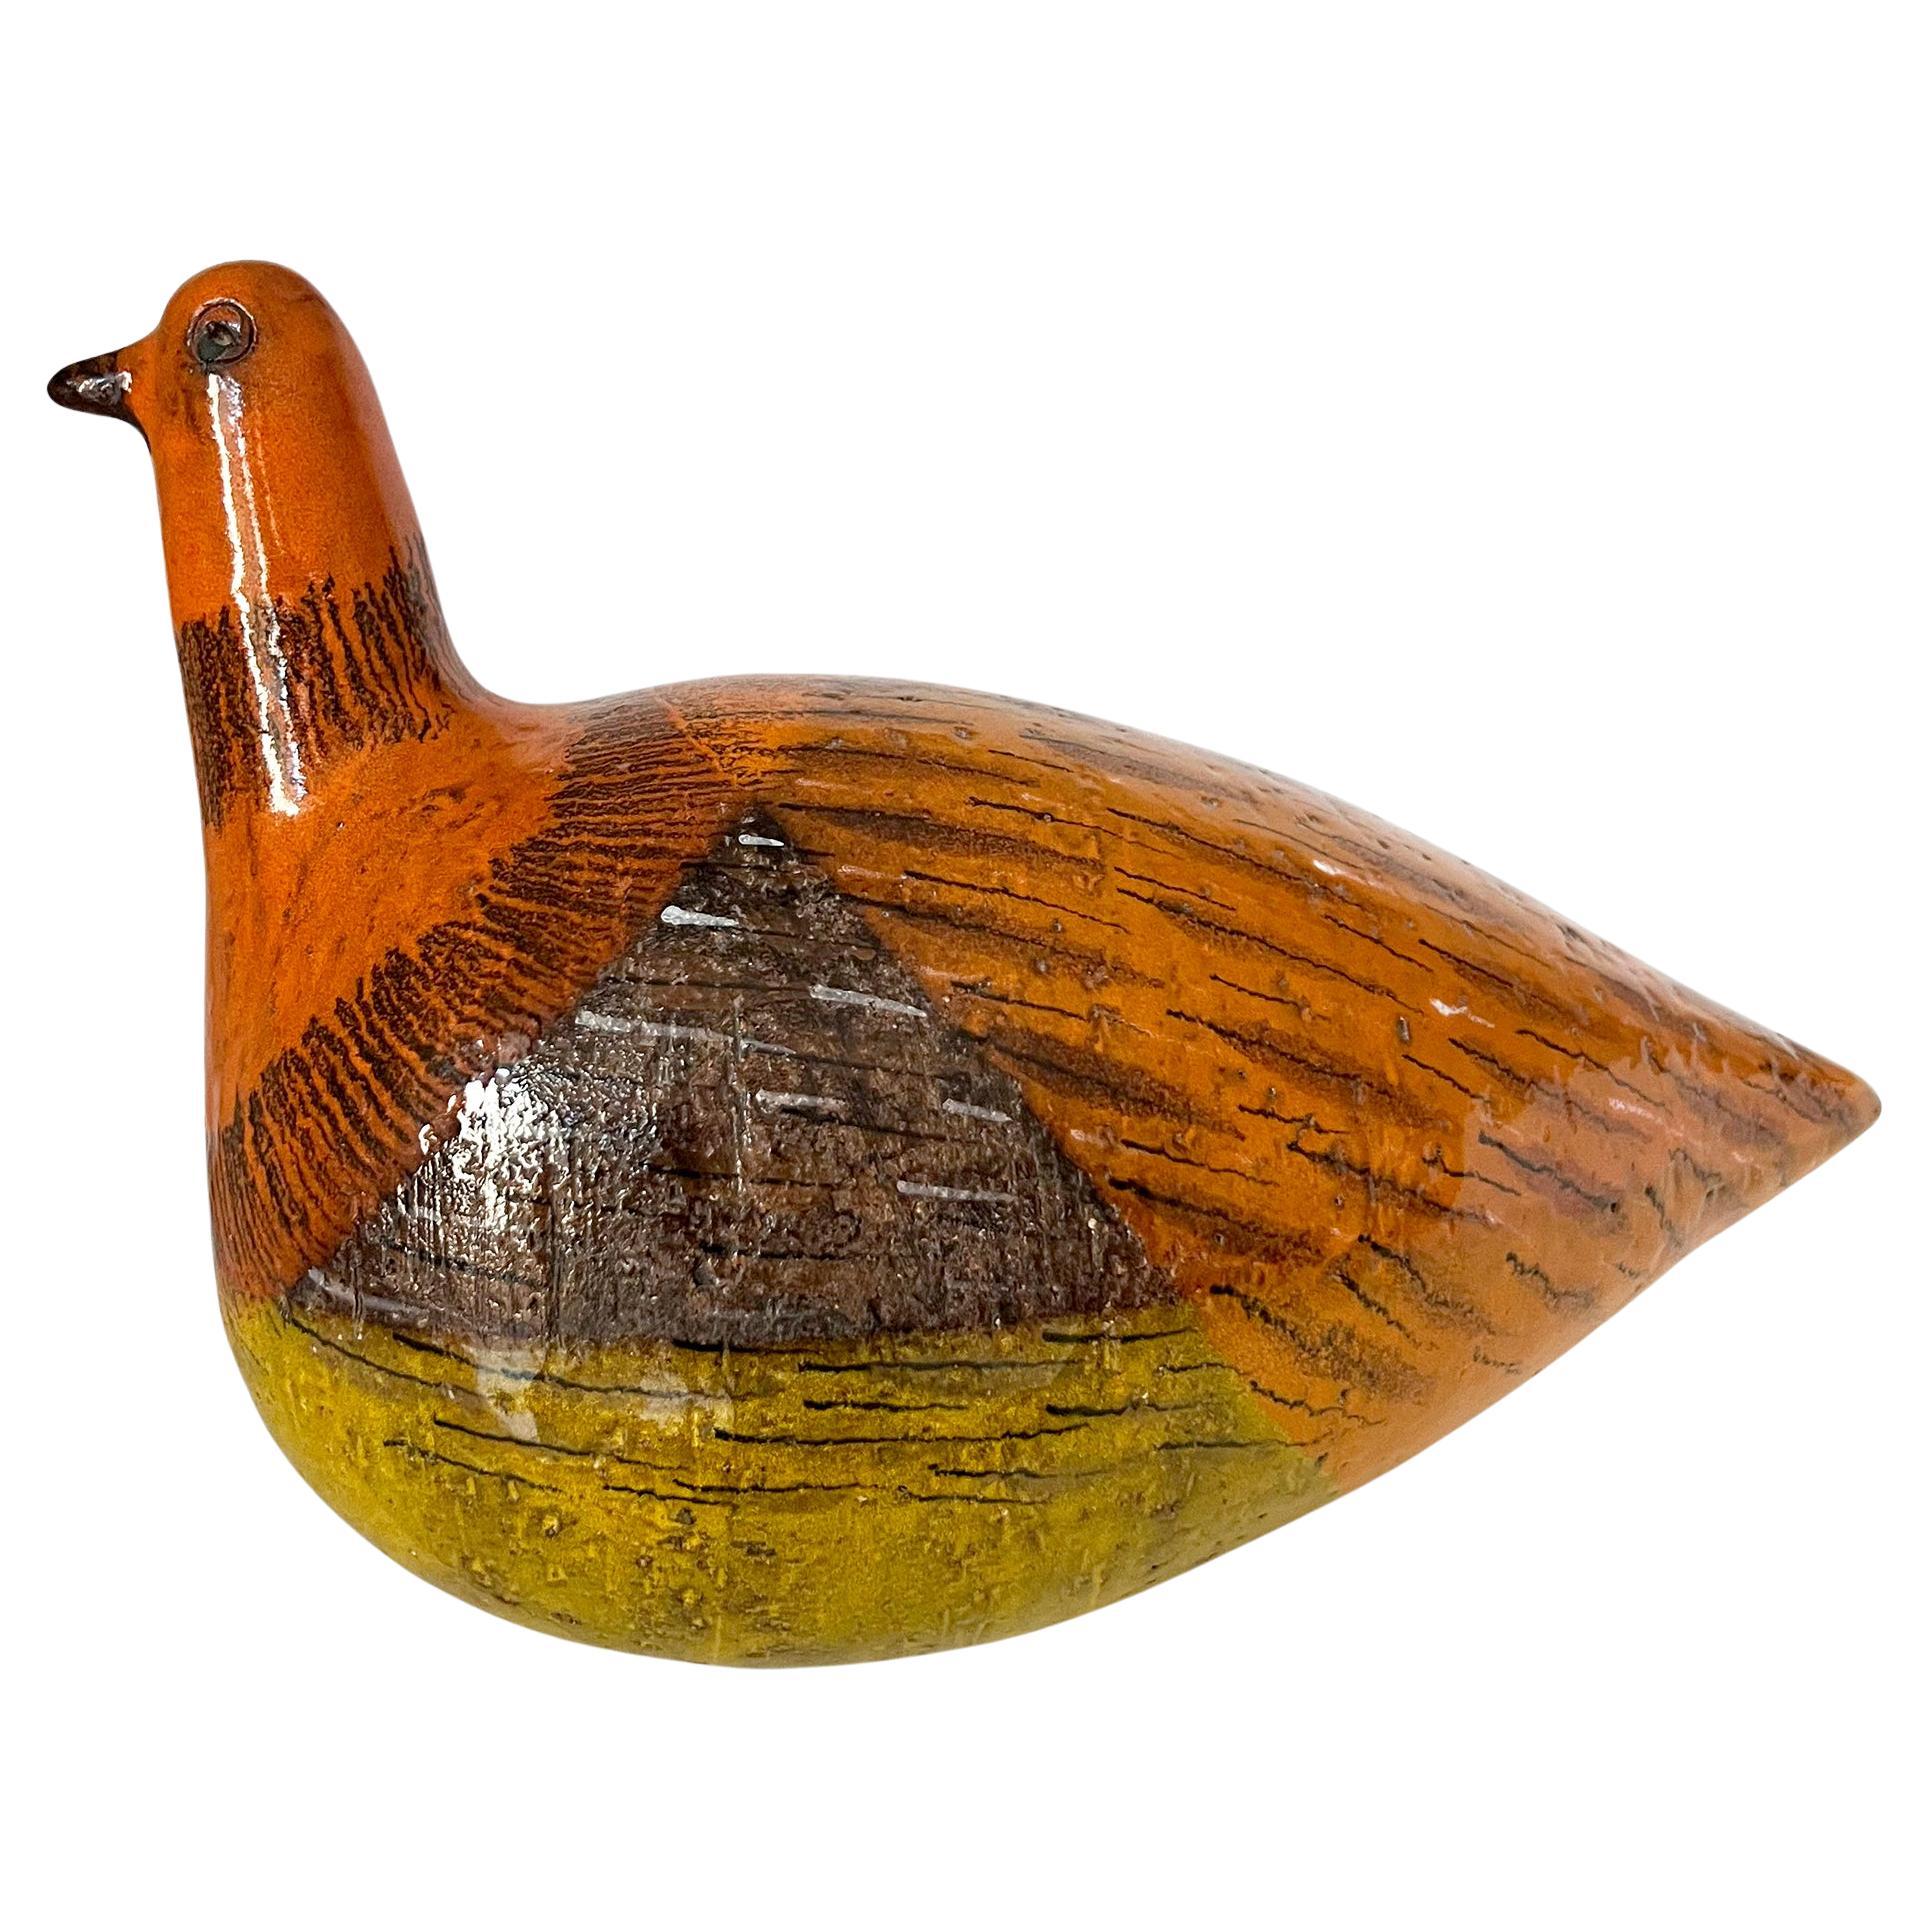 Italienische, modernistische, großformatige Keramikskulptur eines Vogels, geschaffen von Aldo Londi für Bitossi.  Der Vogel misst 7,75